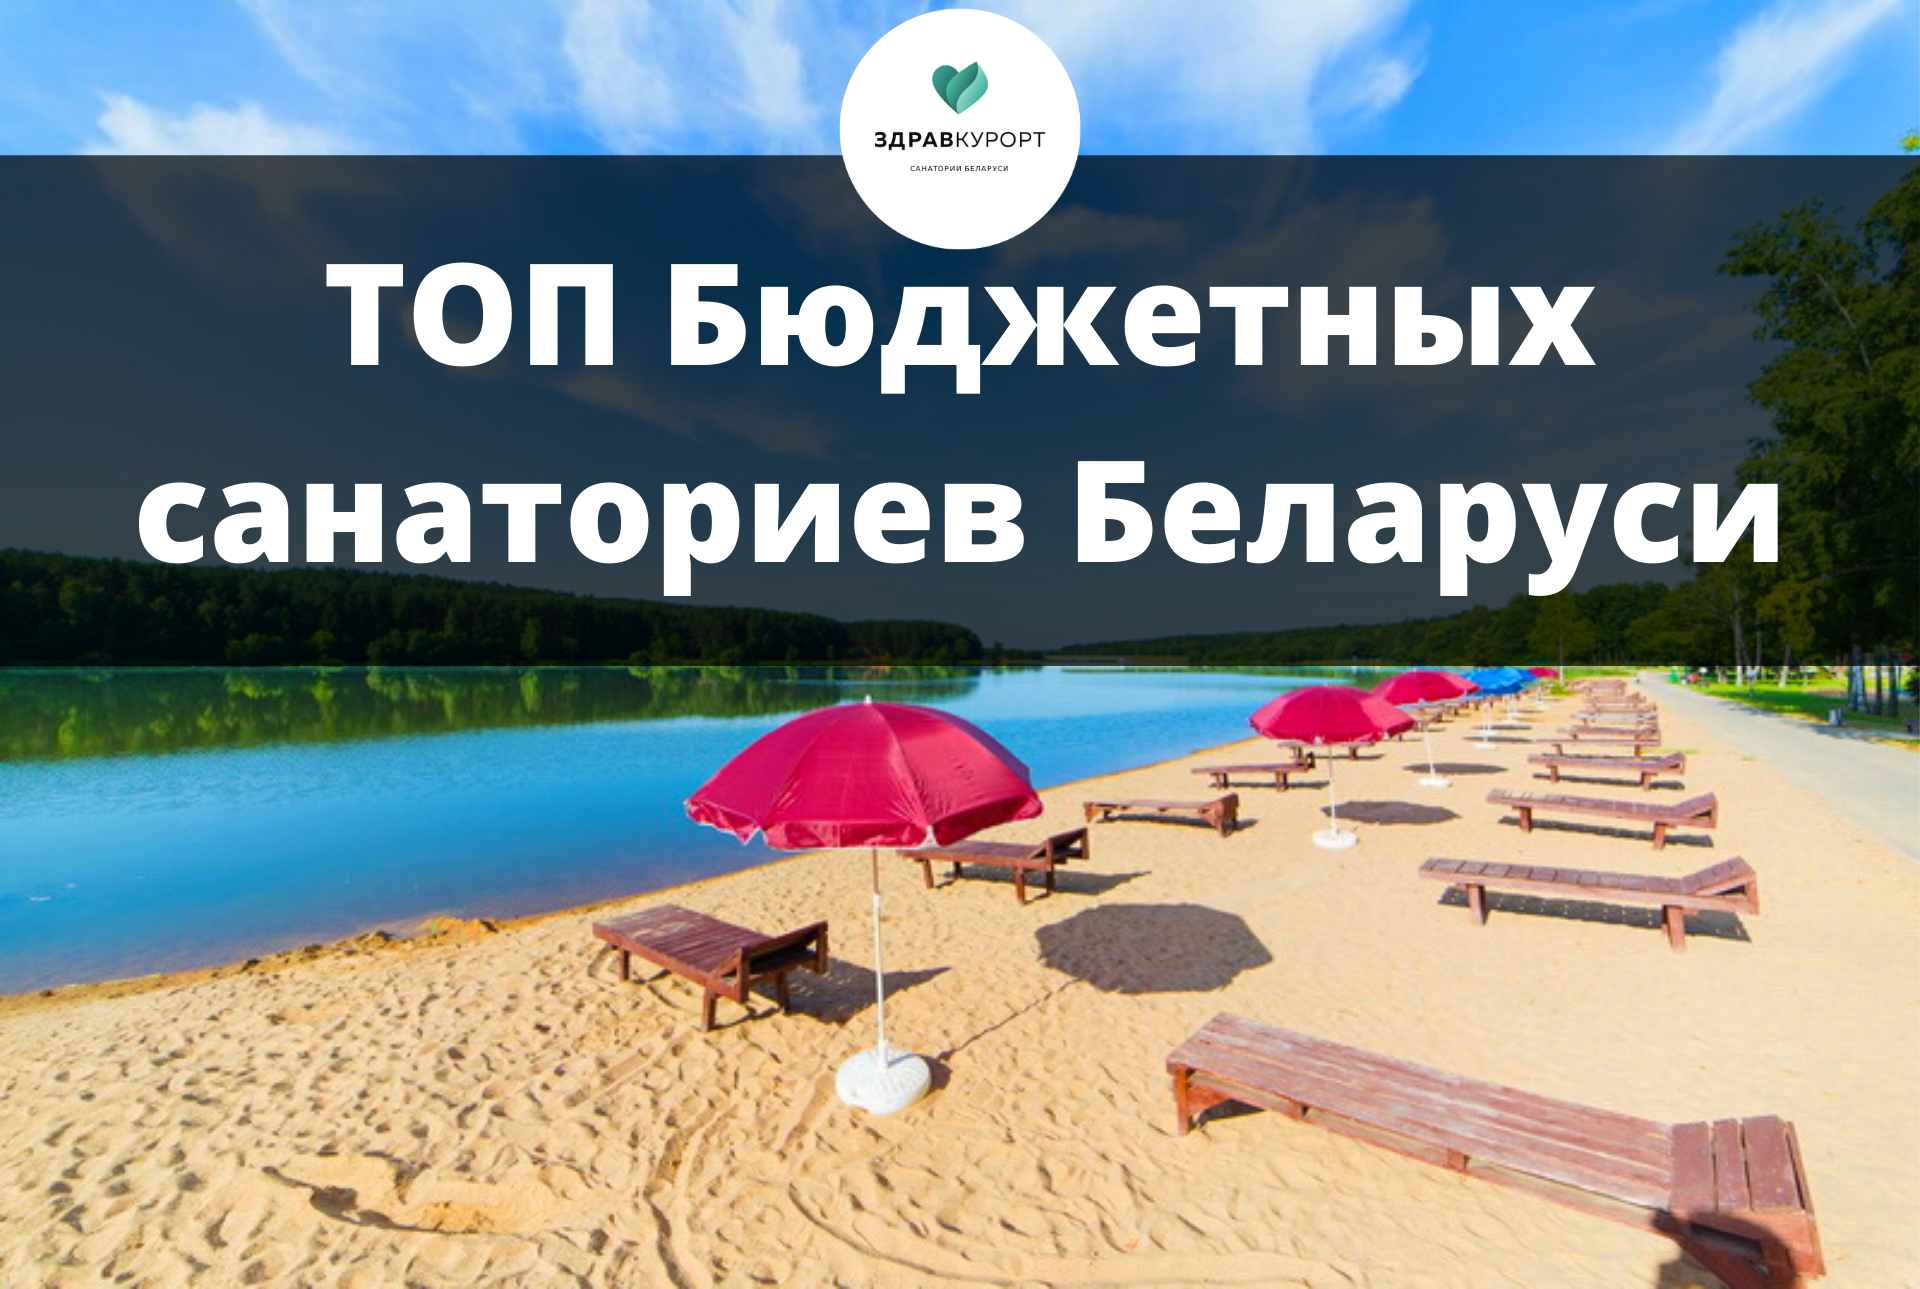 Описание беларуси и основные факты, туризм и отдых в беларуси